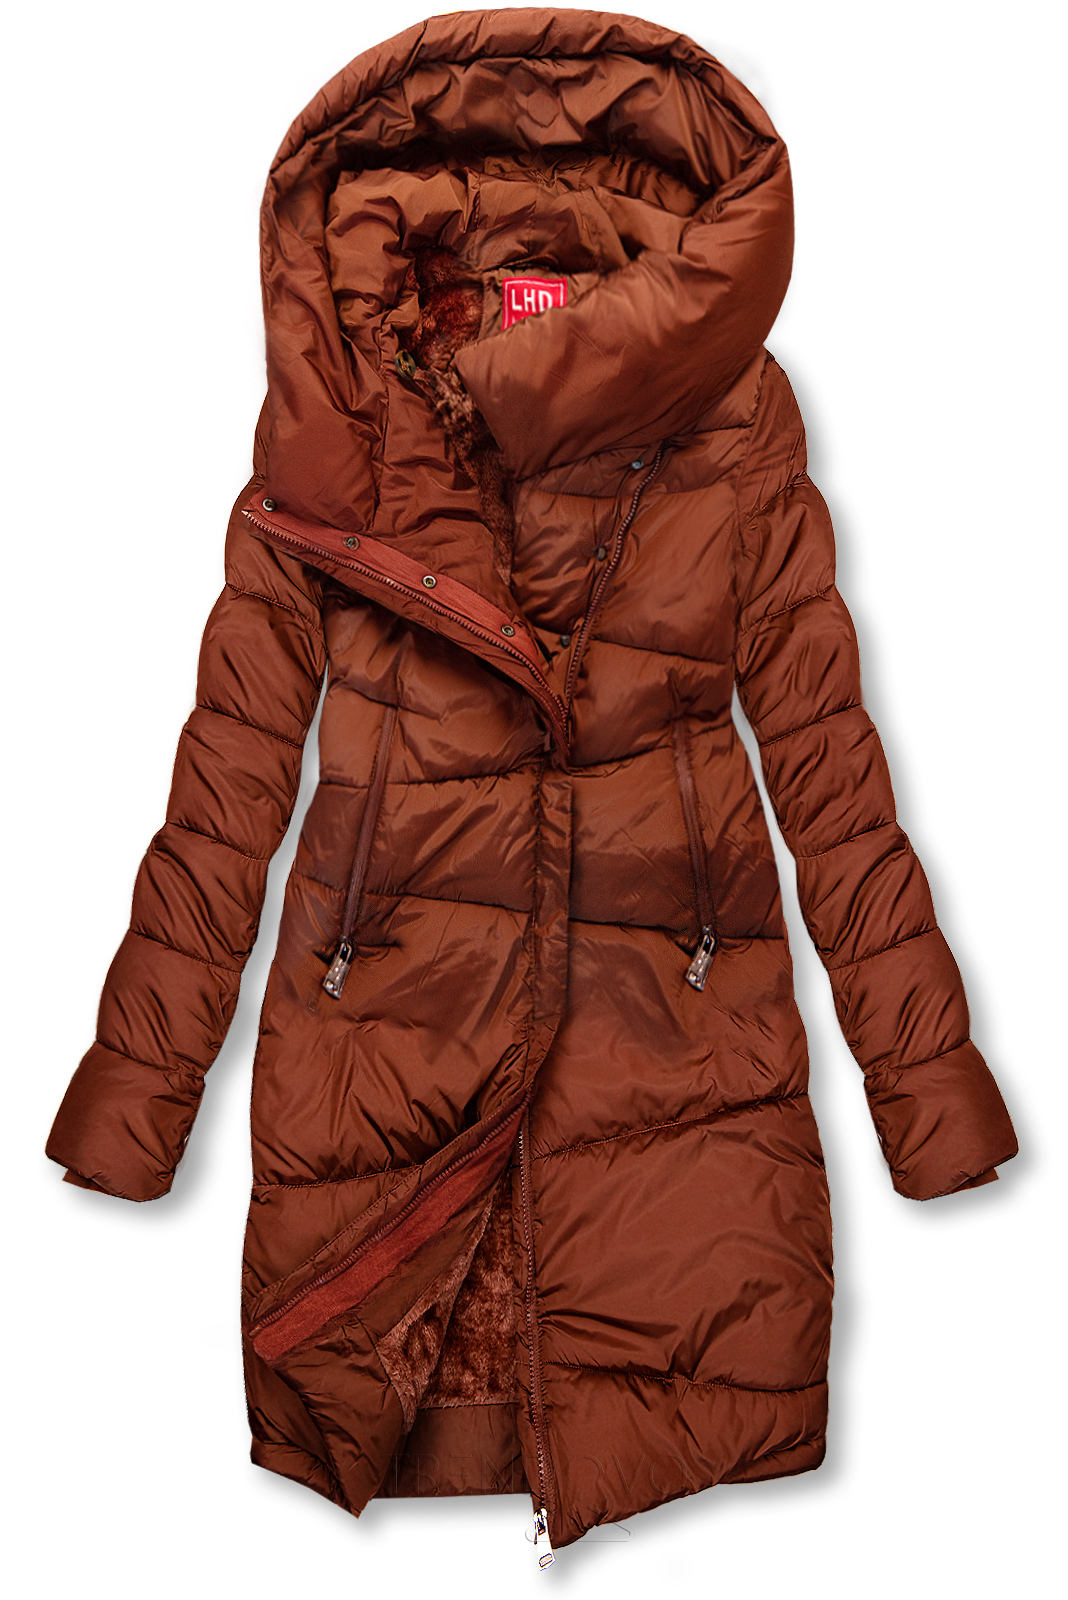 Hnědočervená prošívaná zimní bunda s vysokým límcem